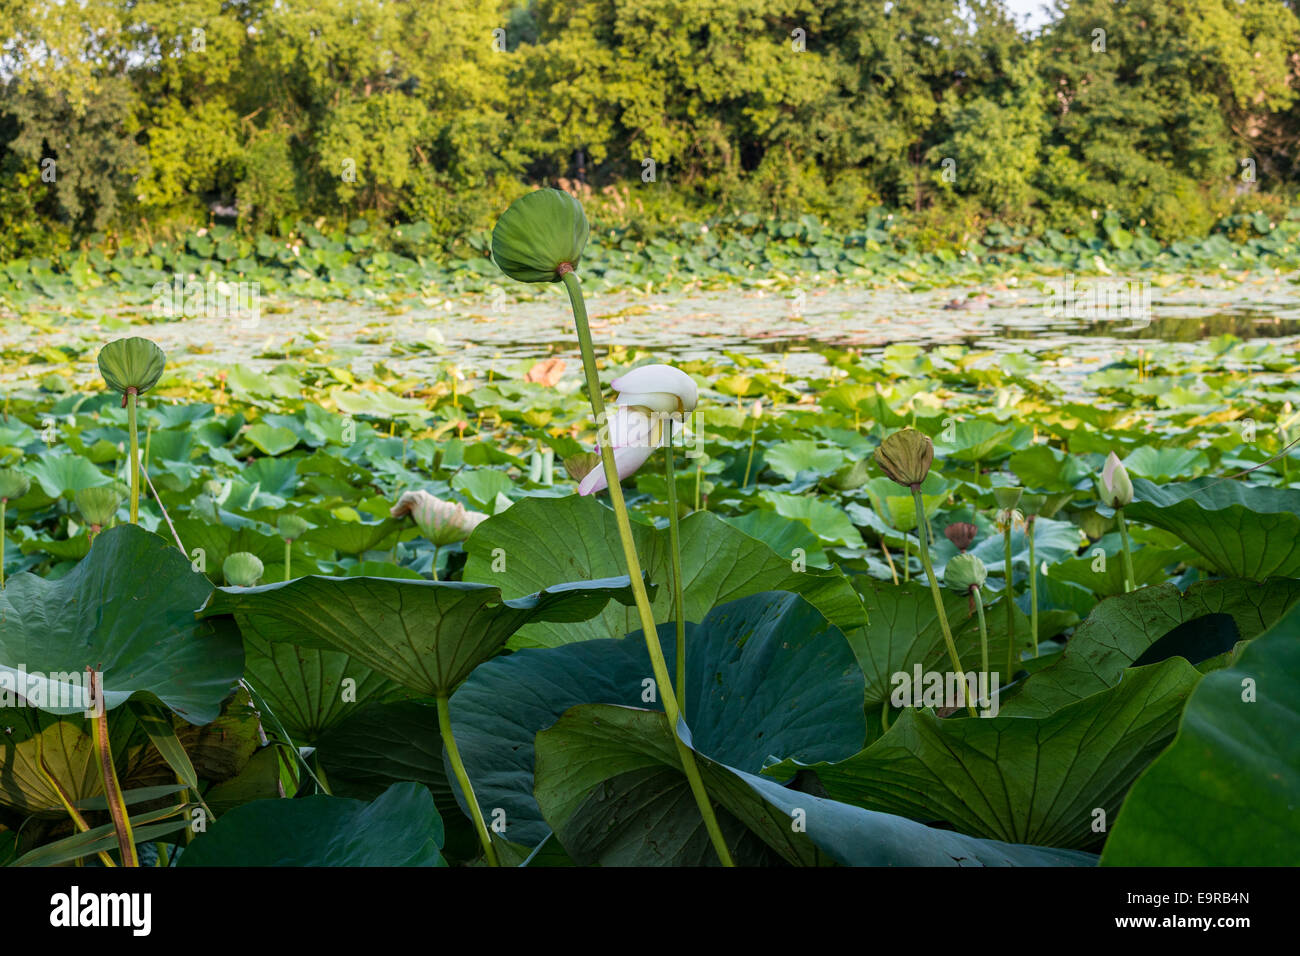 Le parc naturel 'Parco del loto' Lotus zone verte en Italie : un grand étang où les fleurs de lotus (Nelumbo nucifera) et des nénuphars croître librement la création d'un bel environnement naturel. Banque D'Images